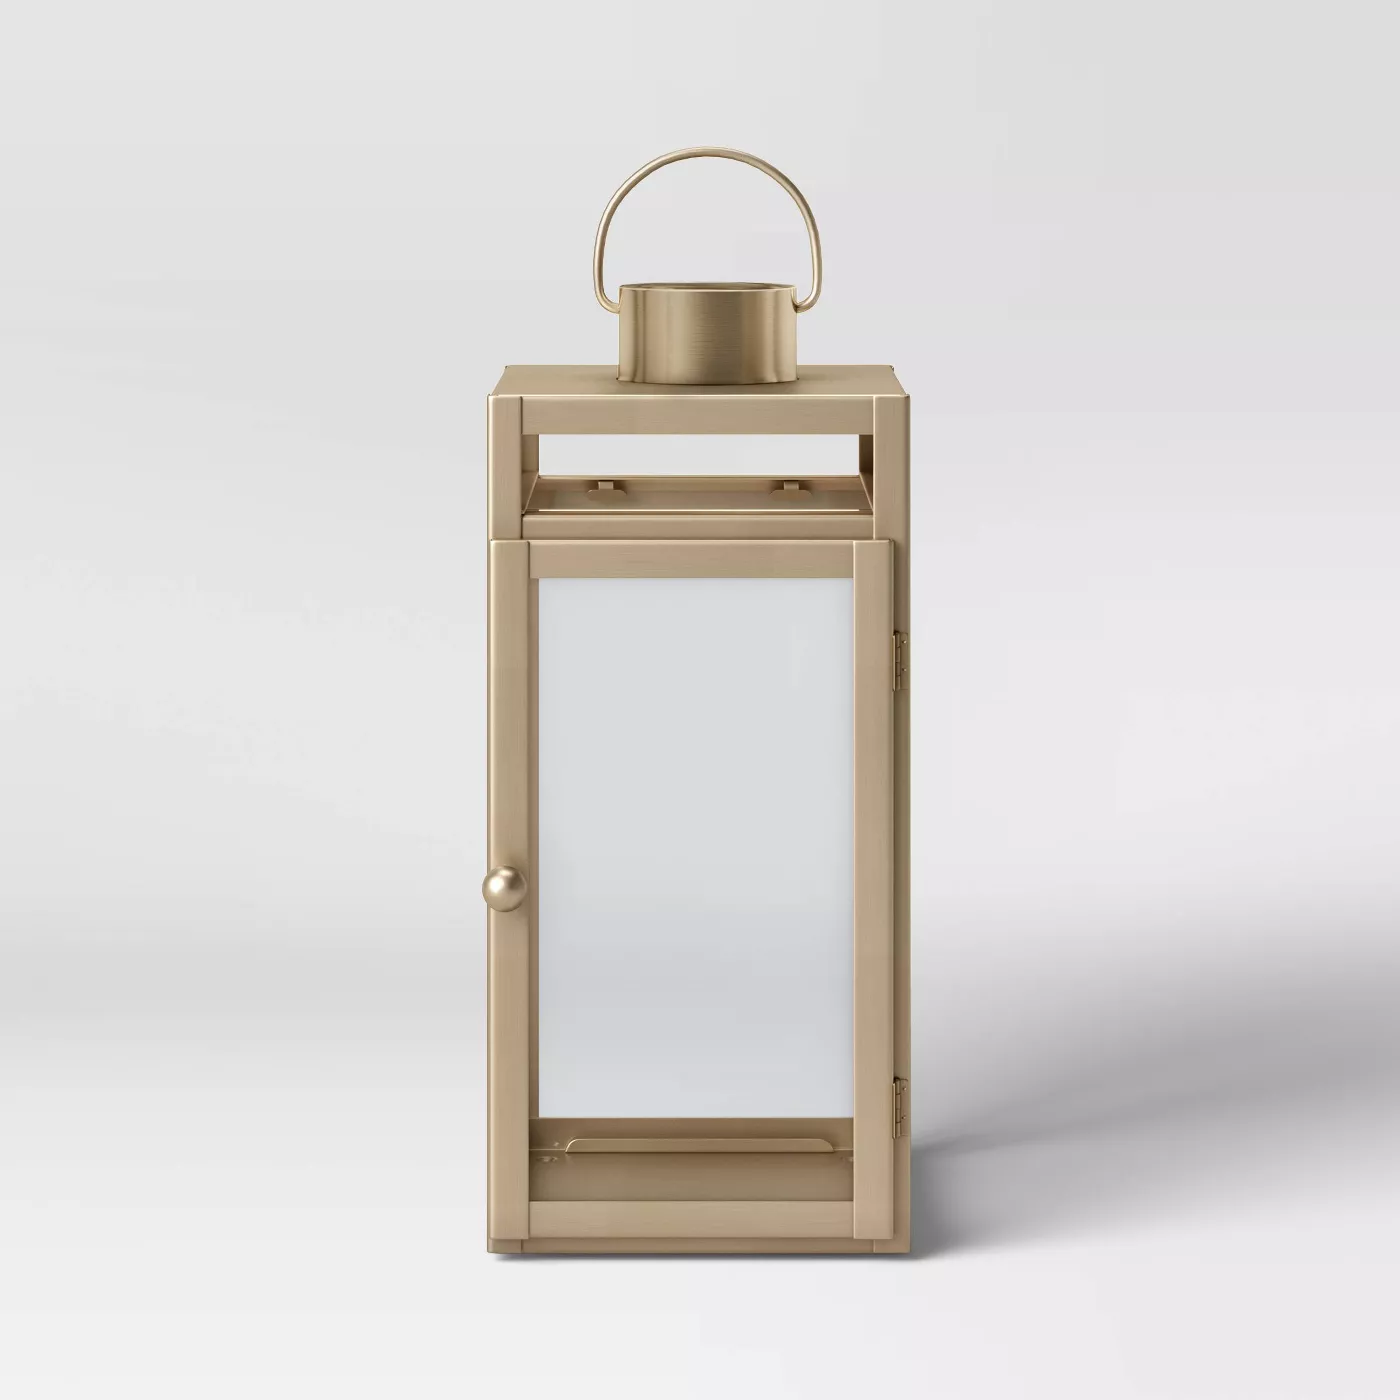 16" x 7" Metal Lantern Candle Holder Matte Gold - Threshold™ - image 1 of 9